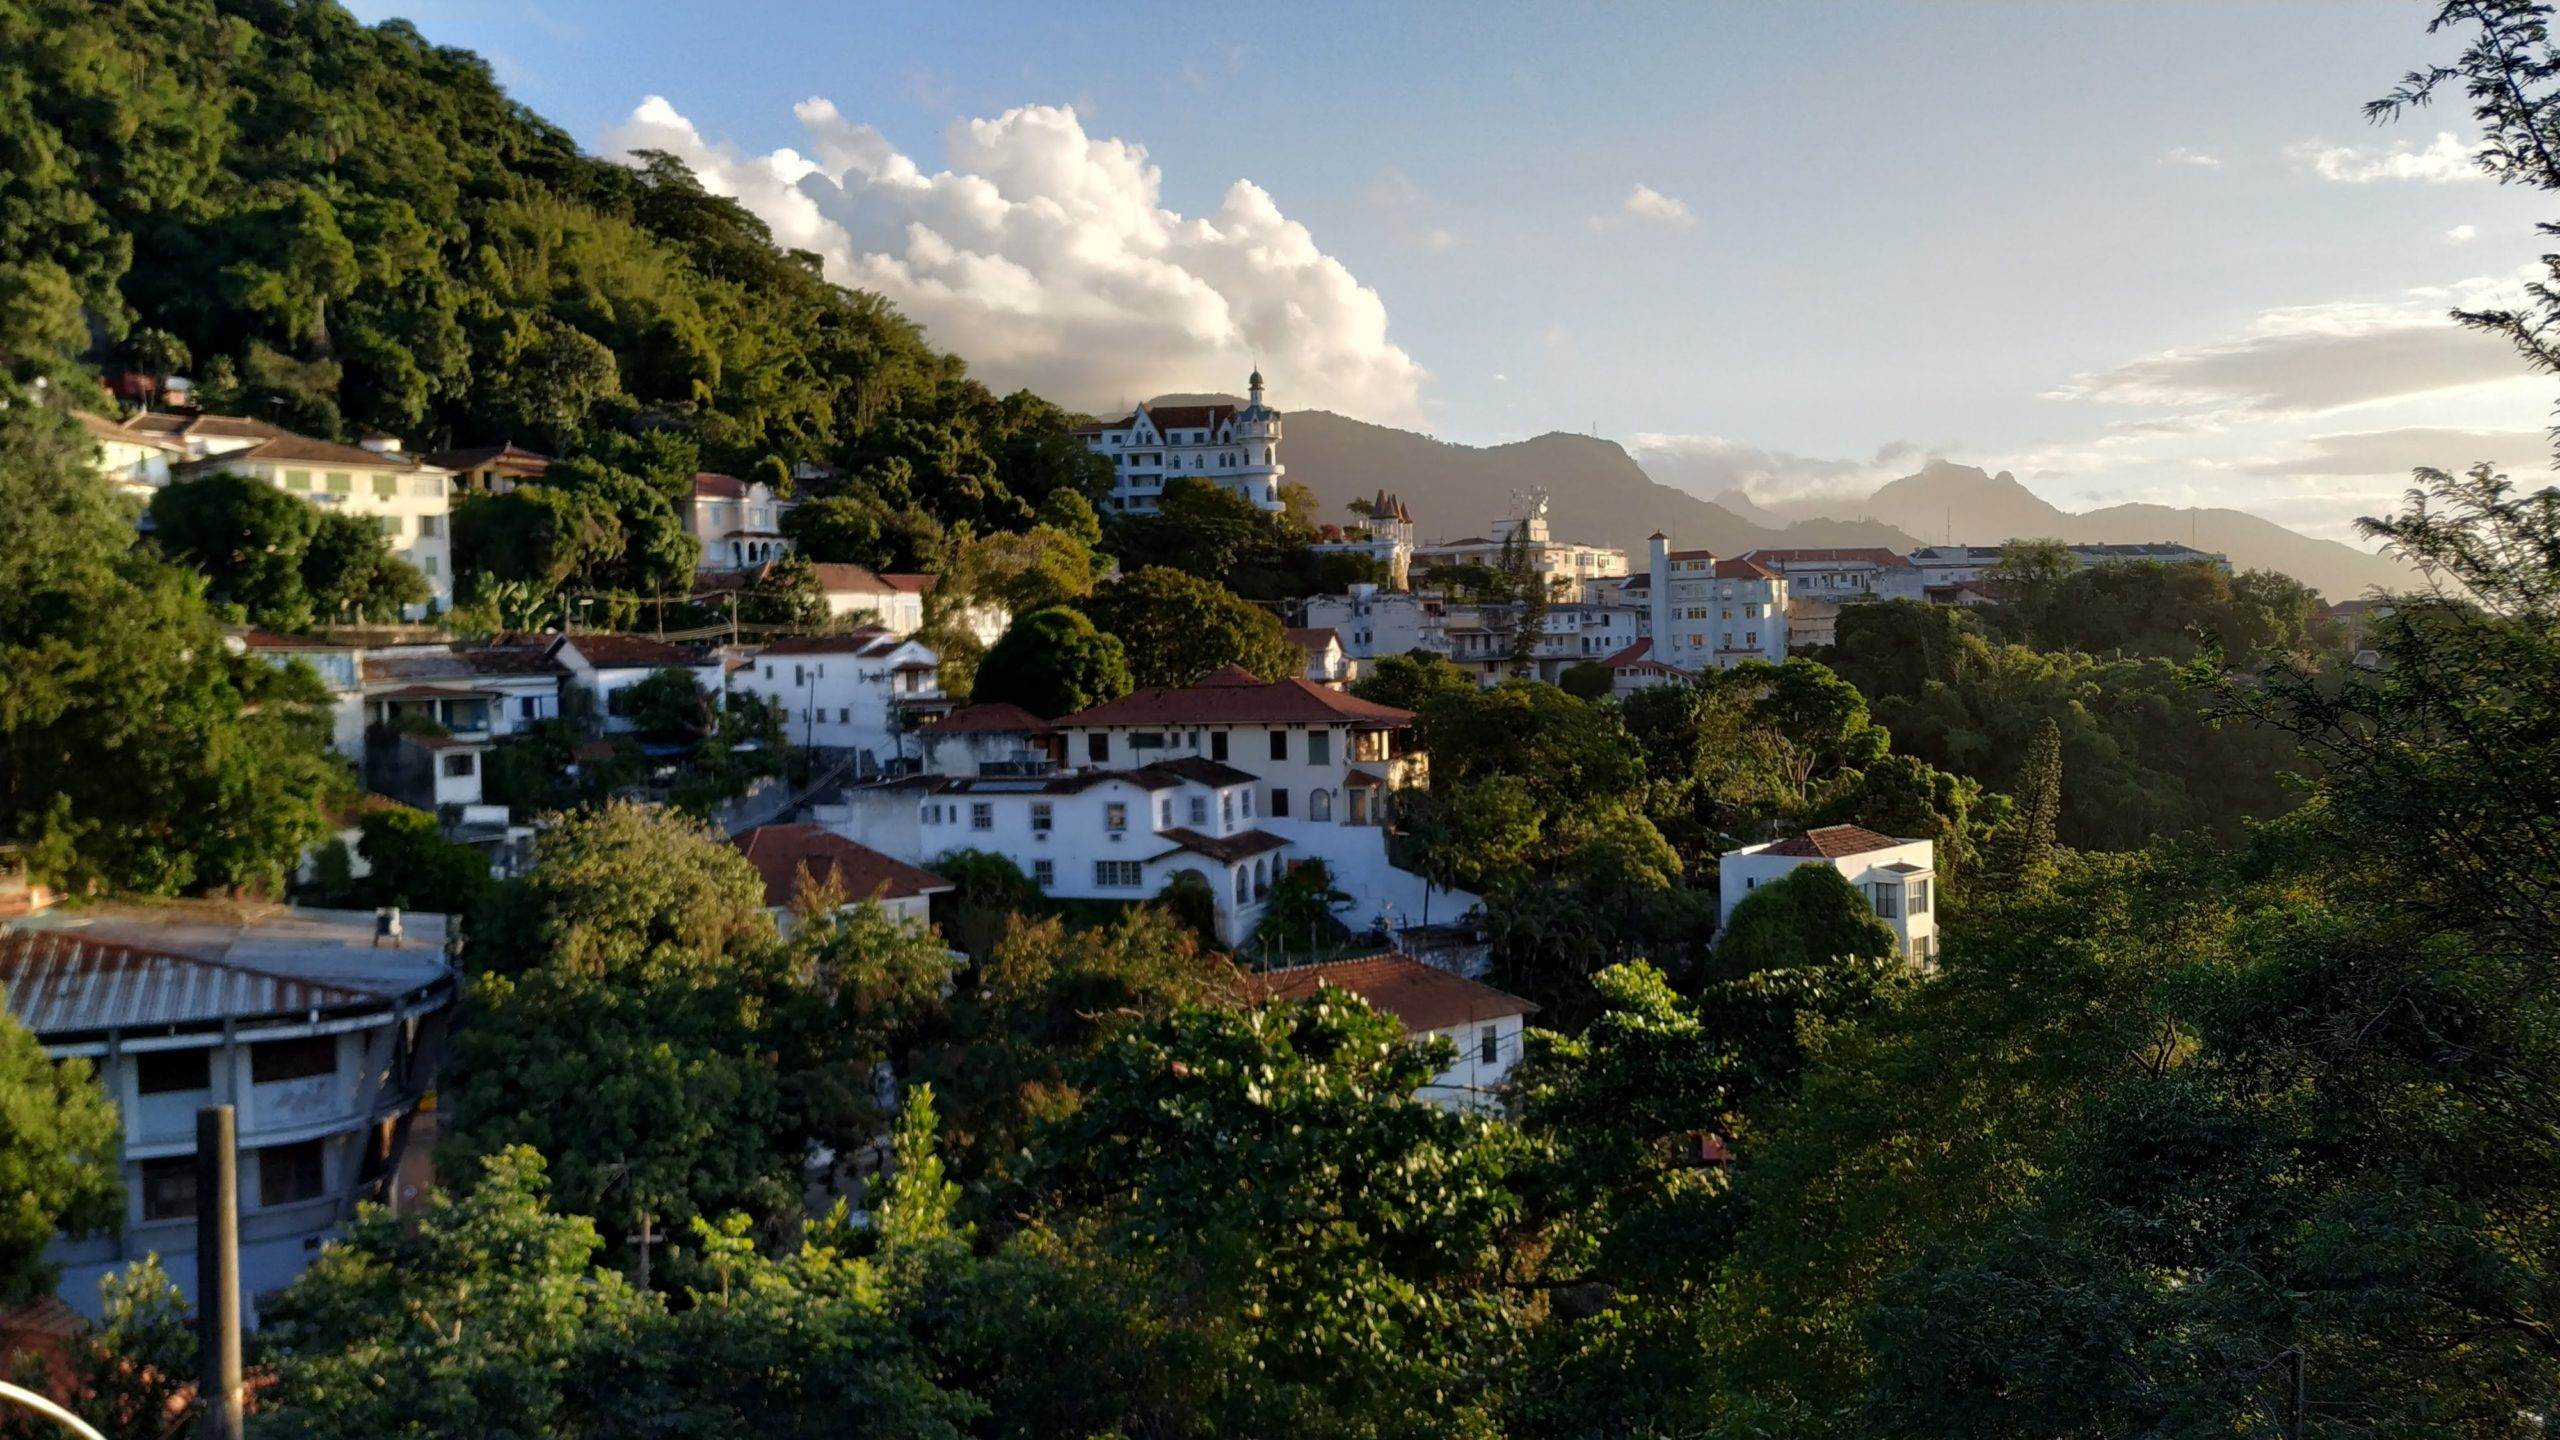 Santa Teresa ist ein Stadtteil von Rio, auf einem Hügel gelegen.